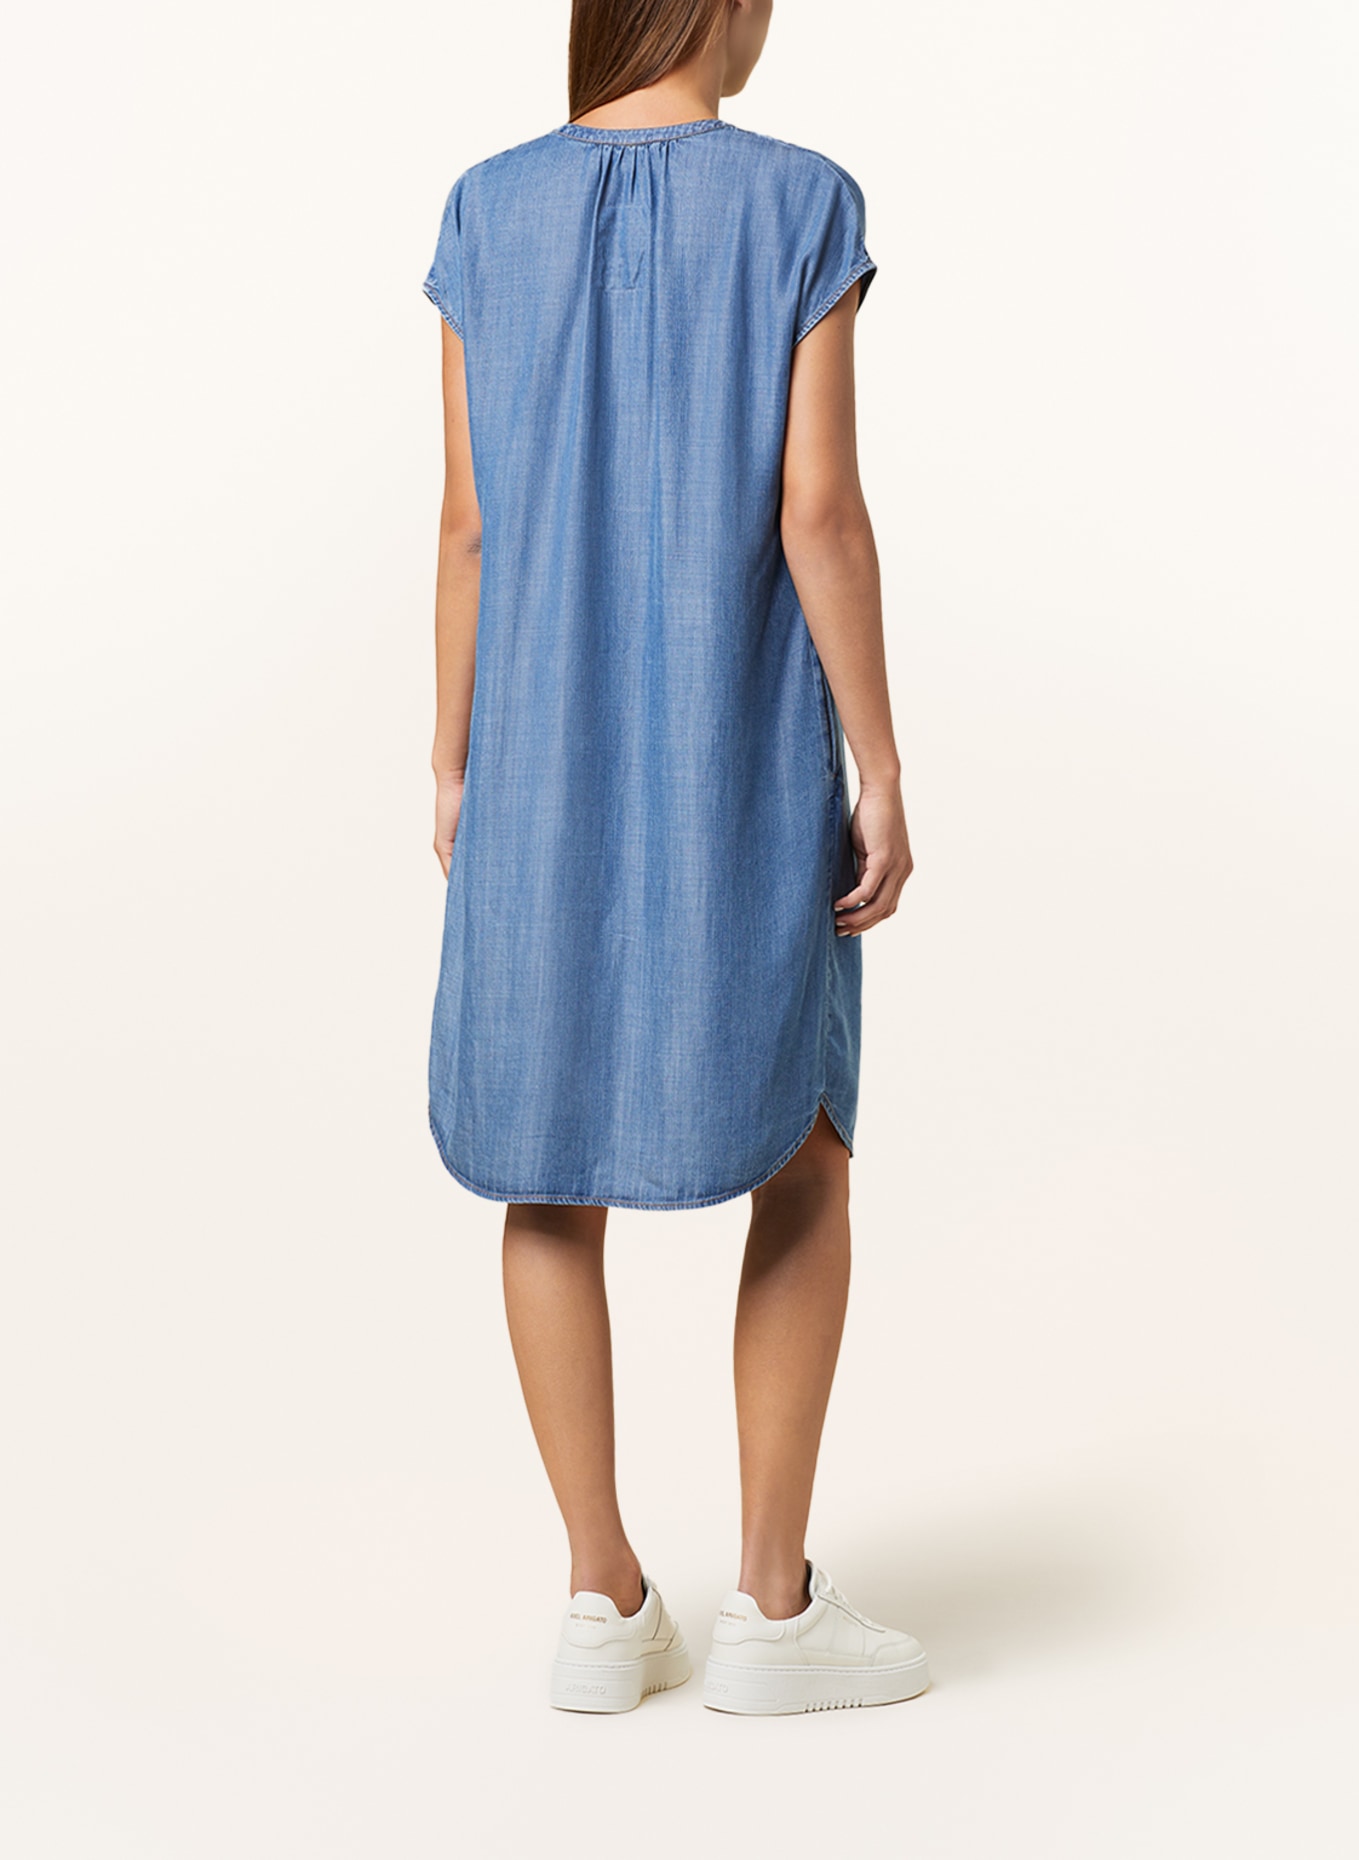 CATNOIR Denim dress, Color: 68 jeans (Image 3)